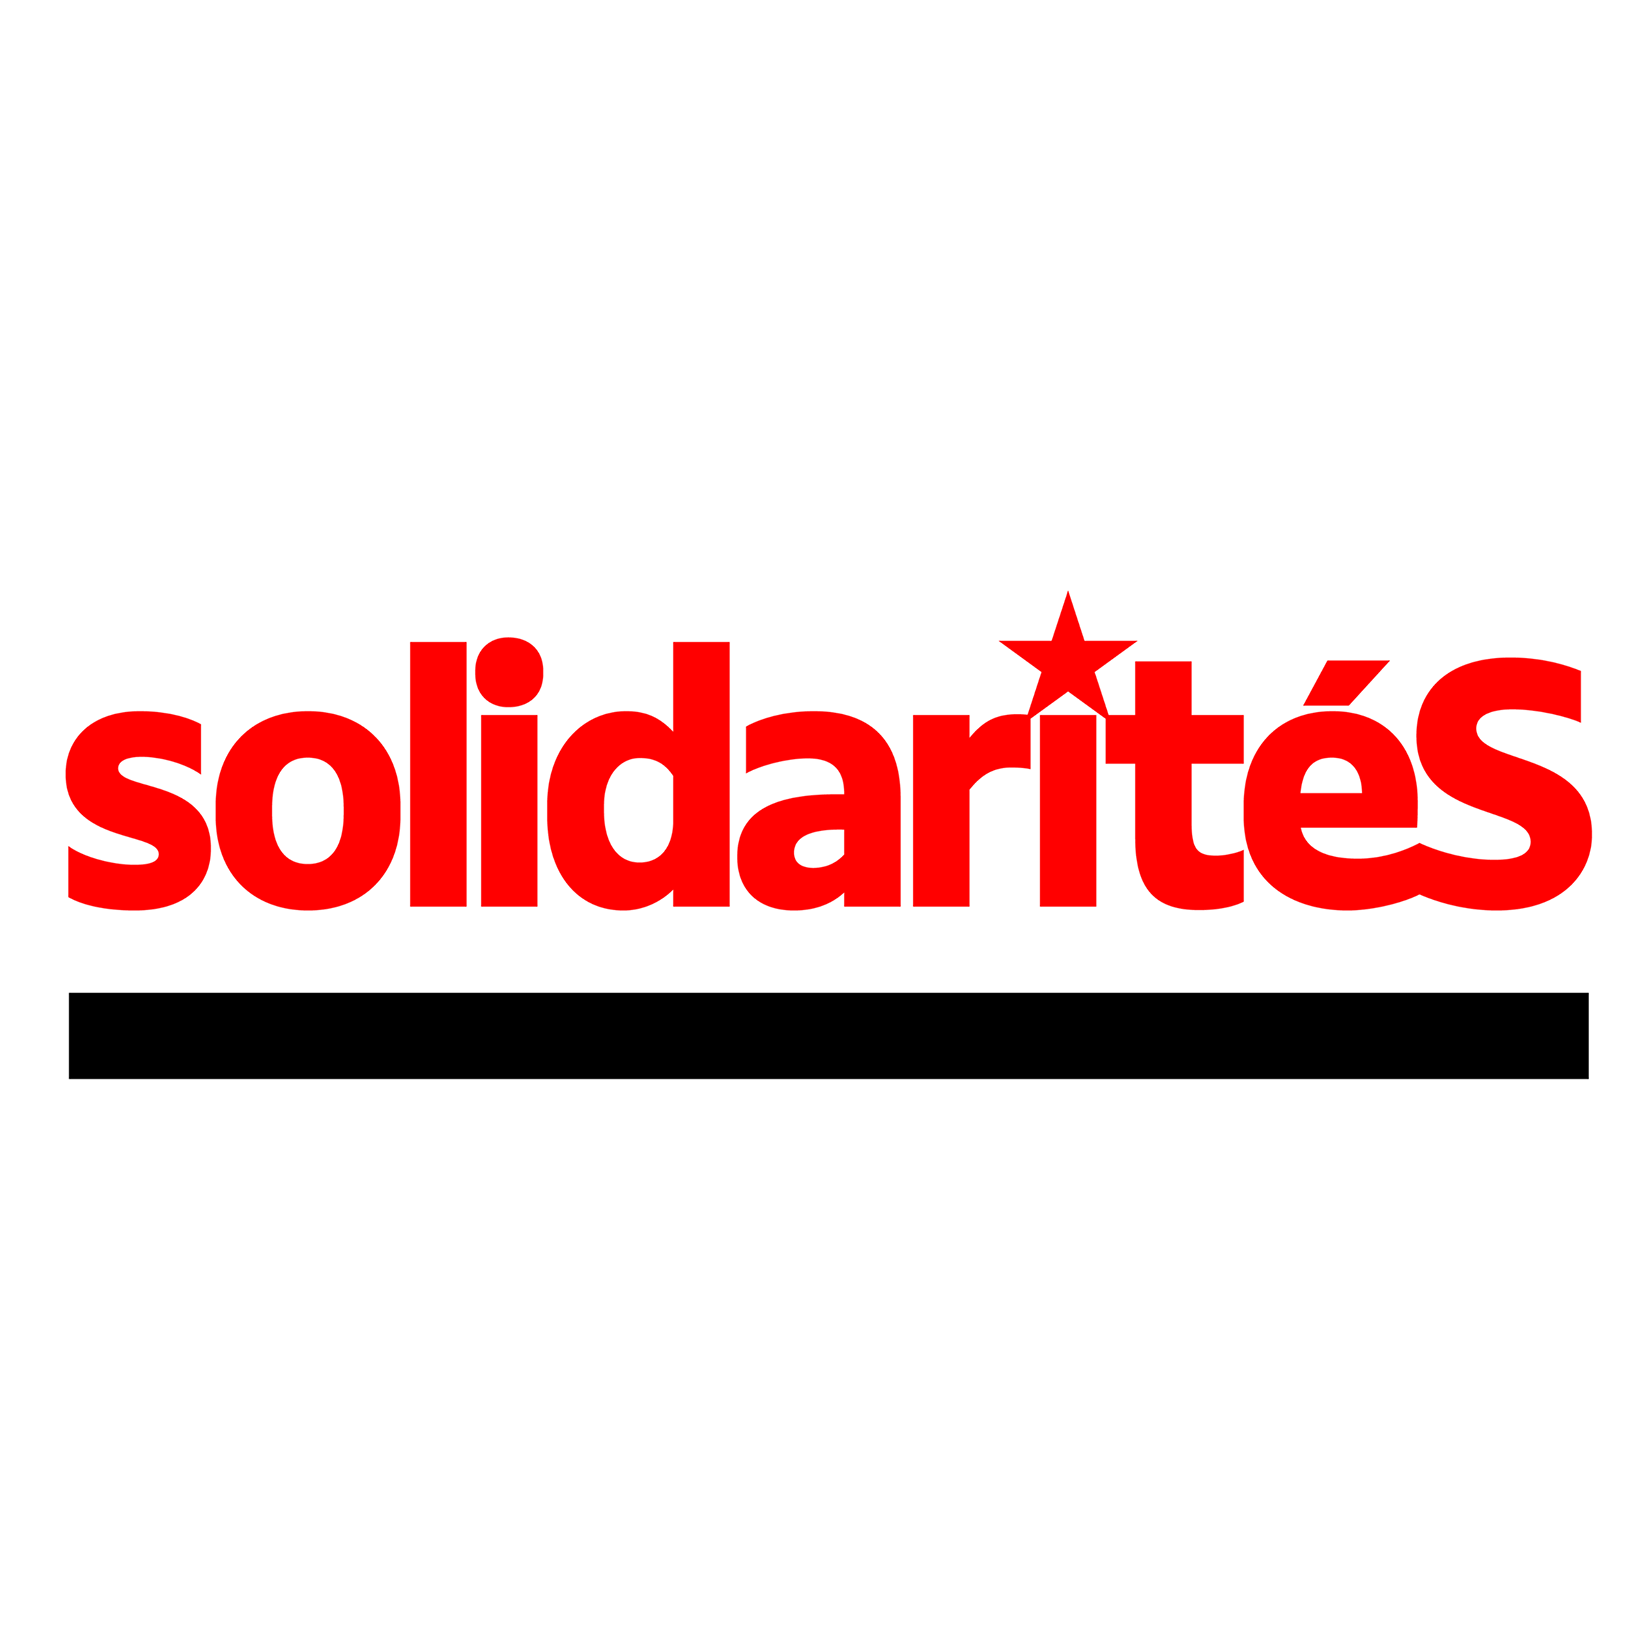 Logo du magasine "SolidaritéS"